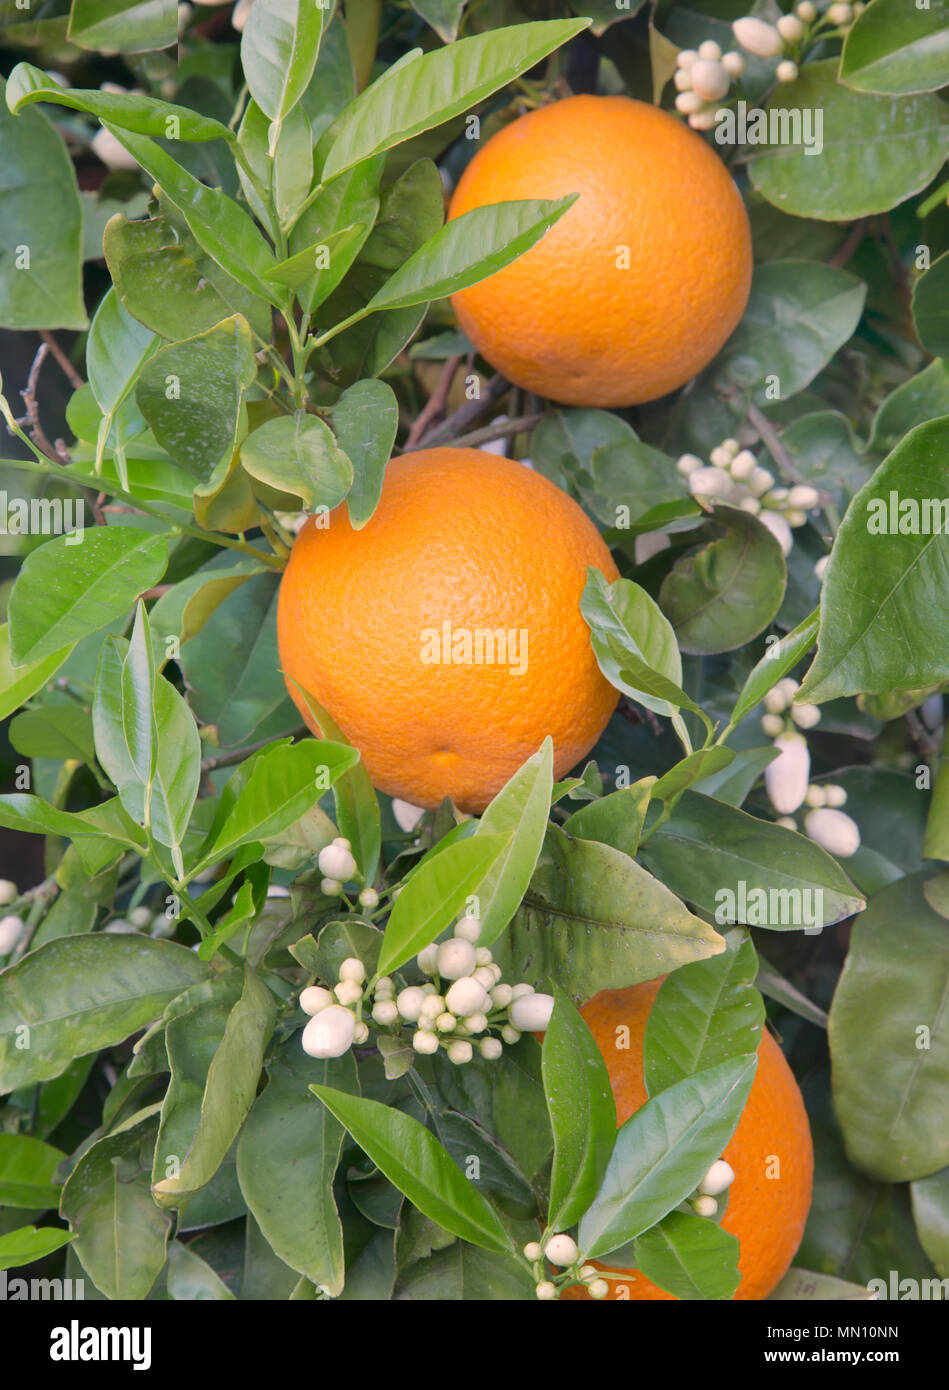 Close-up de la faucheuse Valence nucellaire oranges, des boutons de fleurs, 'Citrus sinensis' avec des fruits mûrs. Banque D'Images